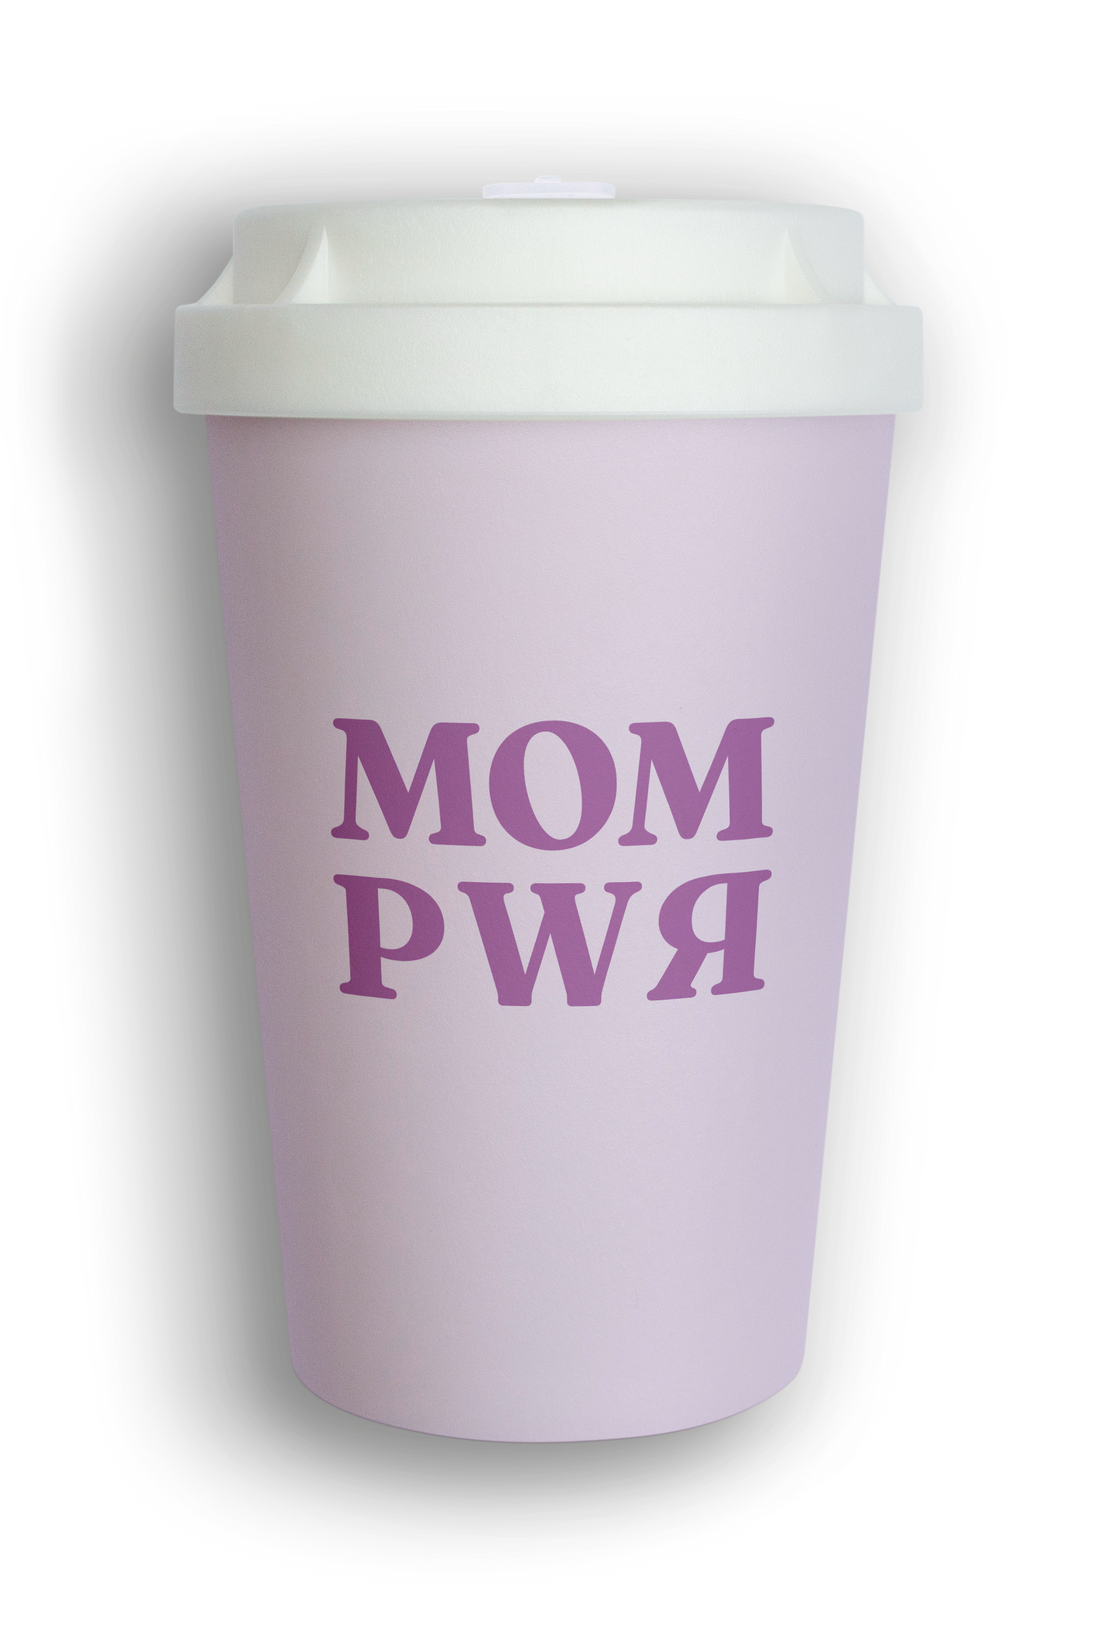 MOM PWR I